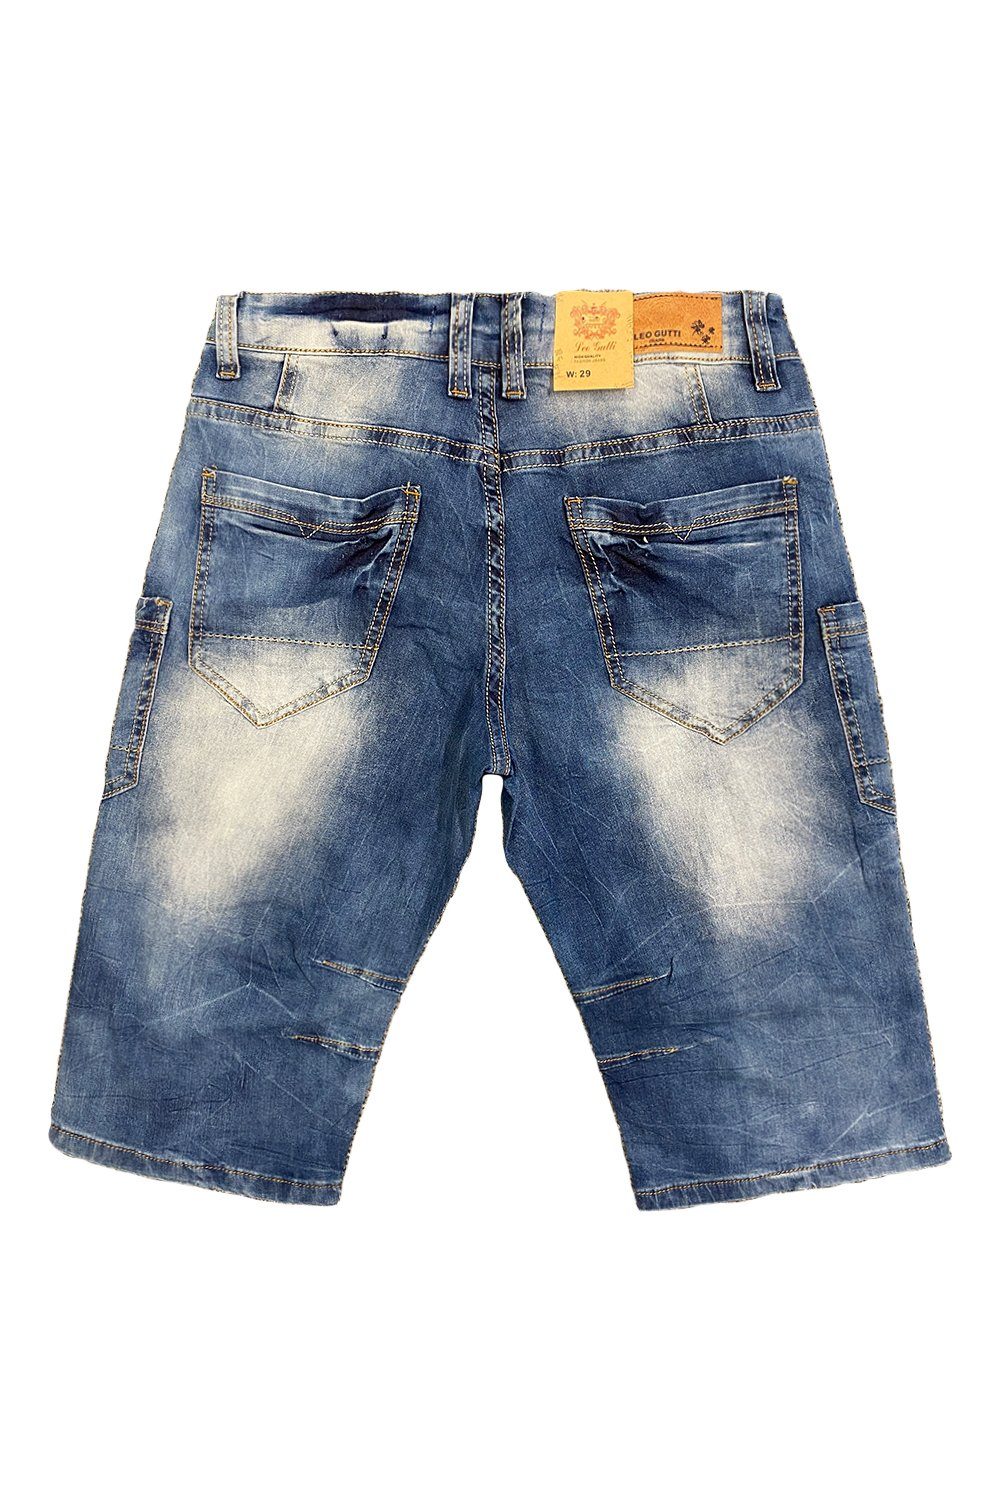 LEO GUTTI Jeansshorts Jeans Shorts in Jeans Kurze Blau Sommer (1-tlg) 3151 5-Pocket Hose